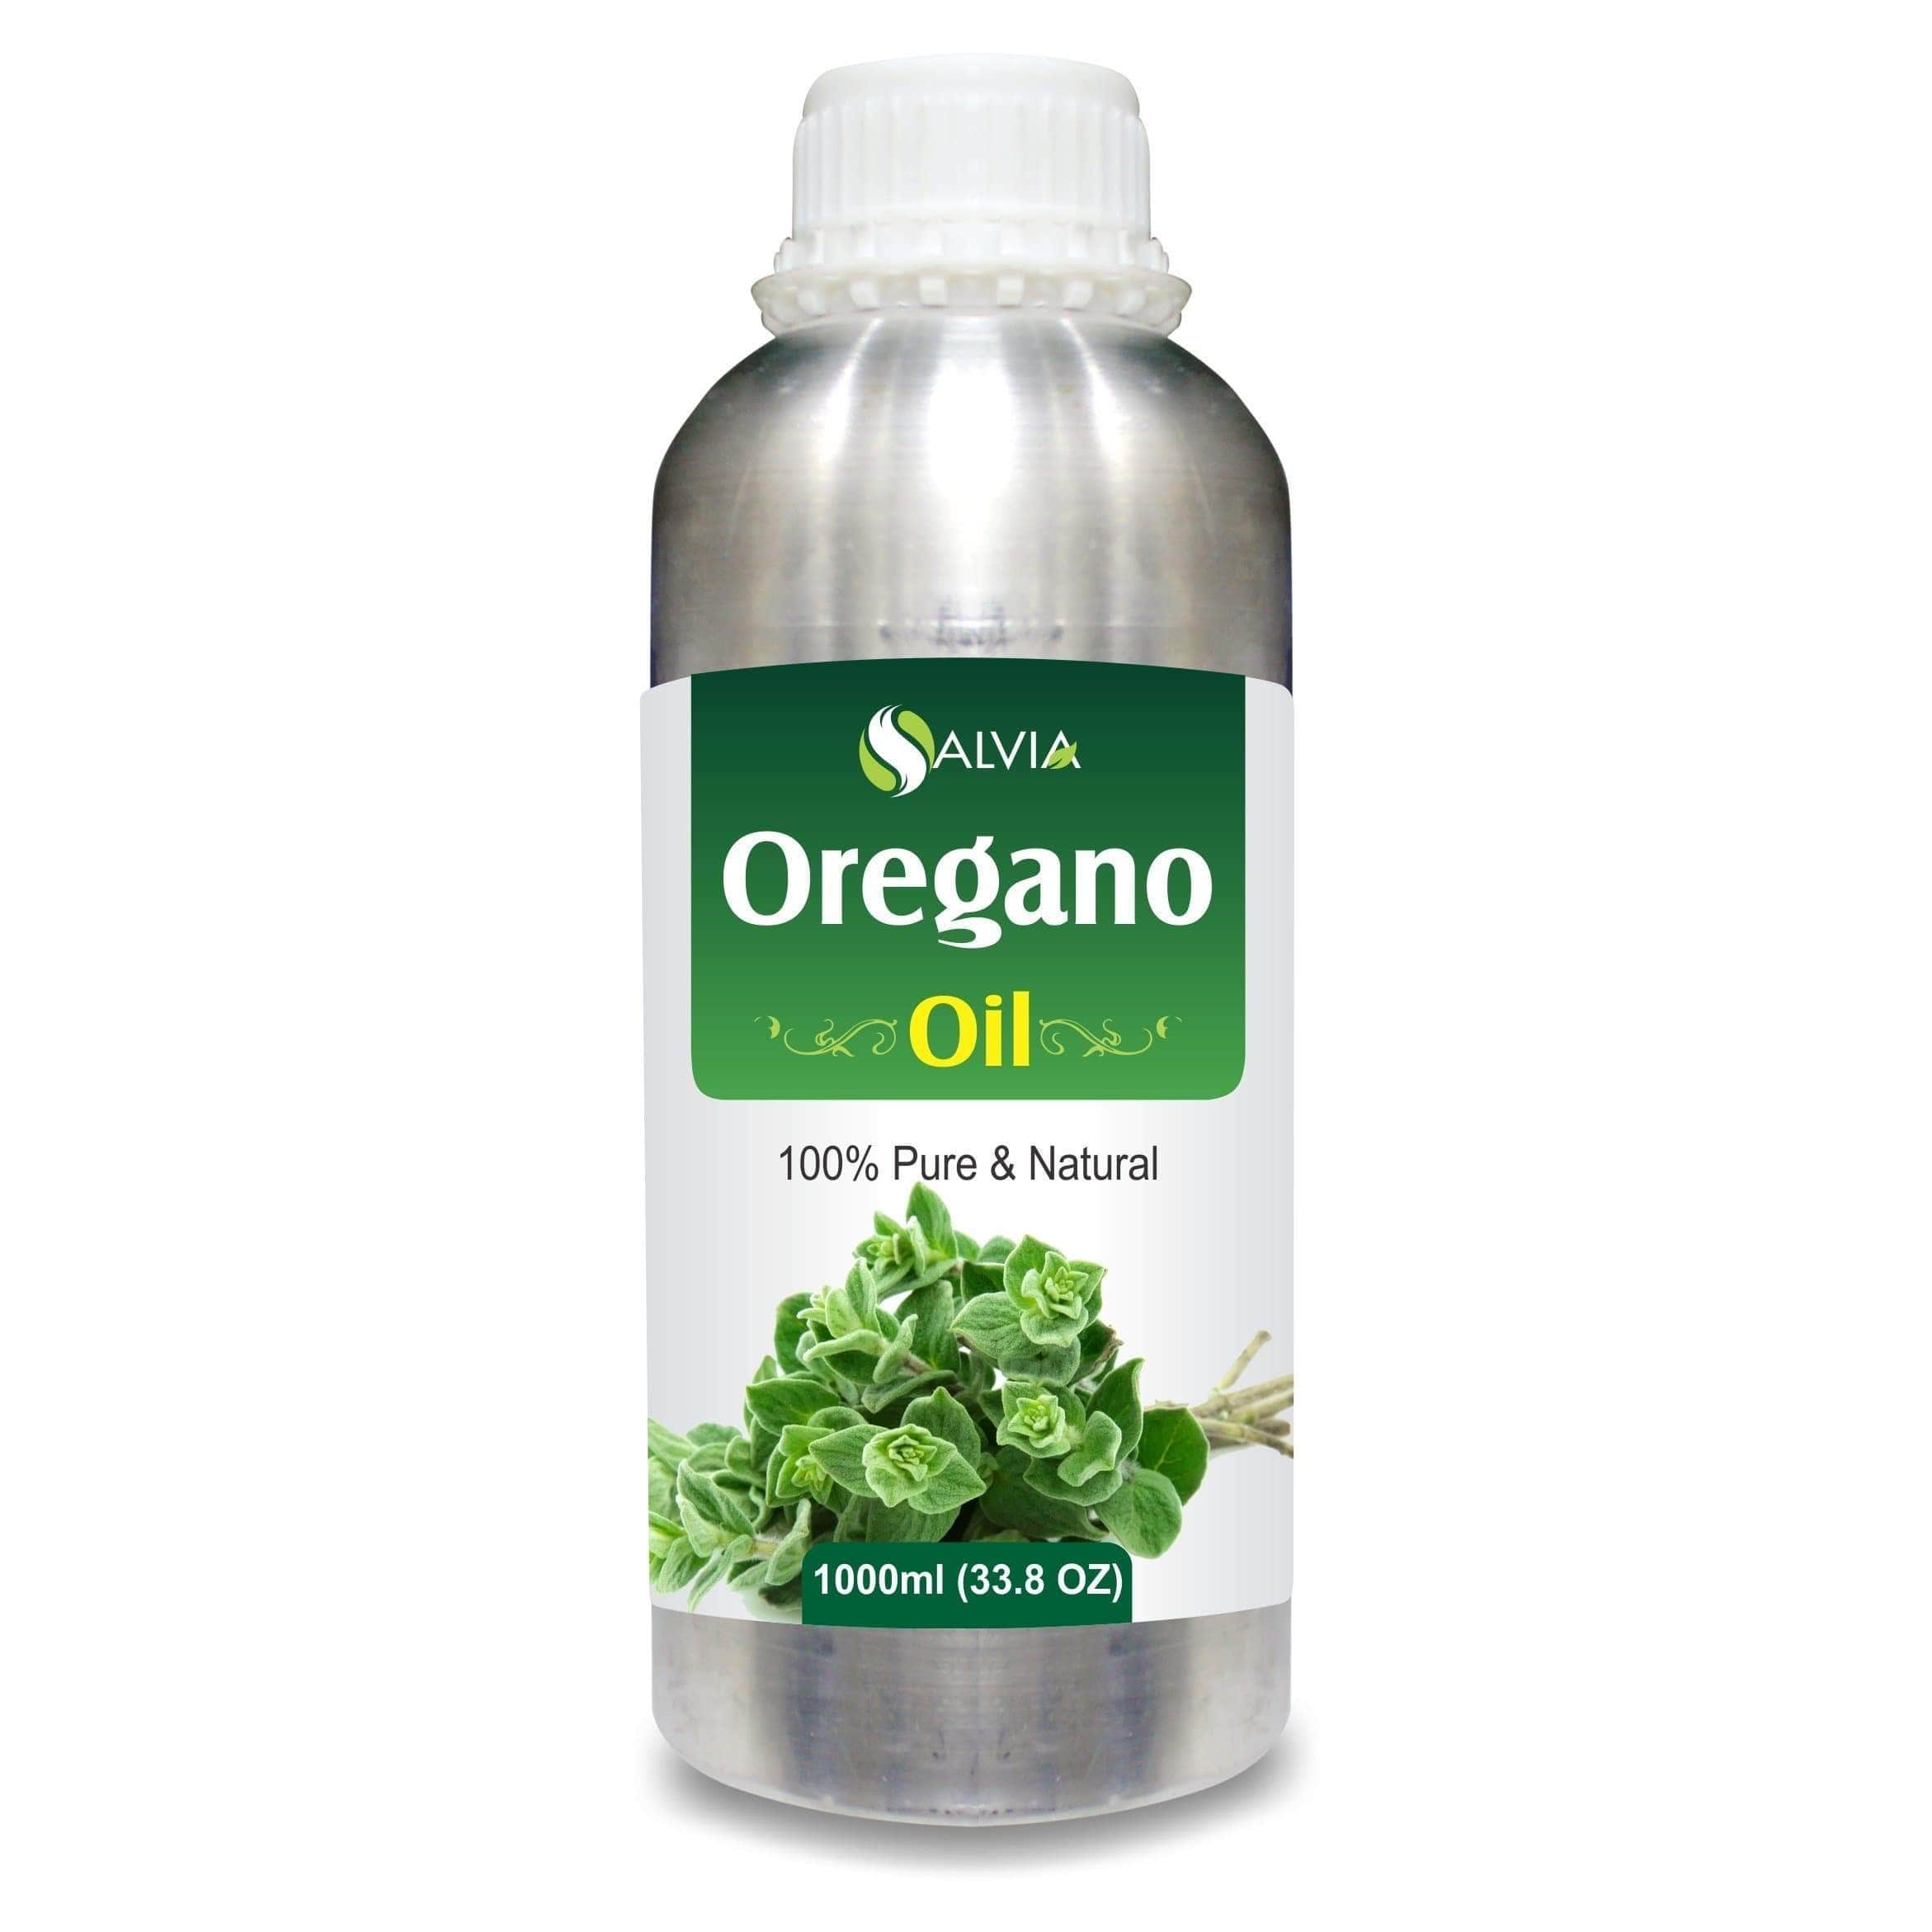 oregano oil for hair